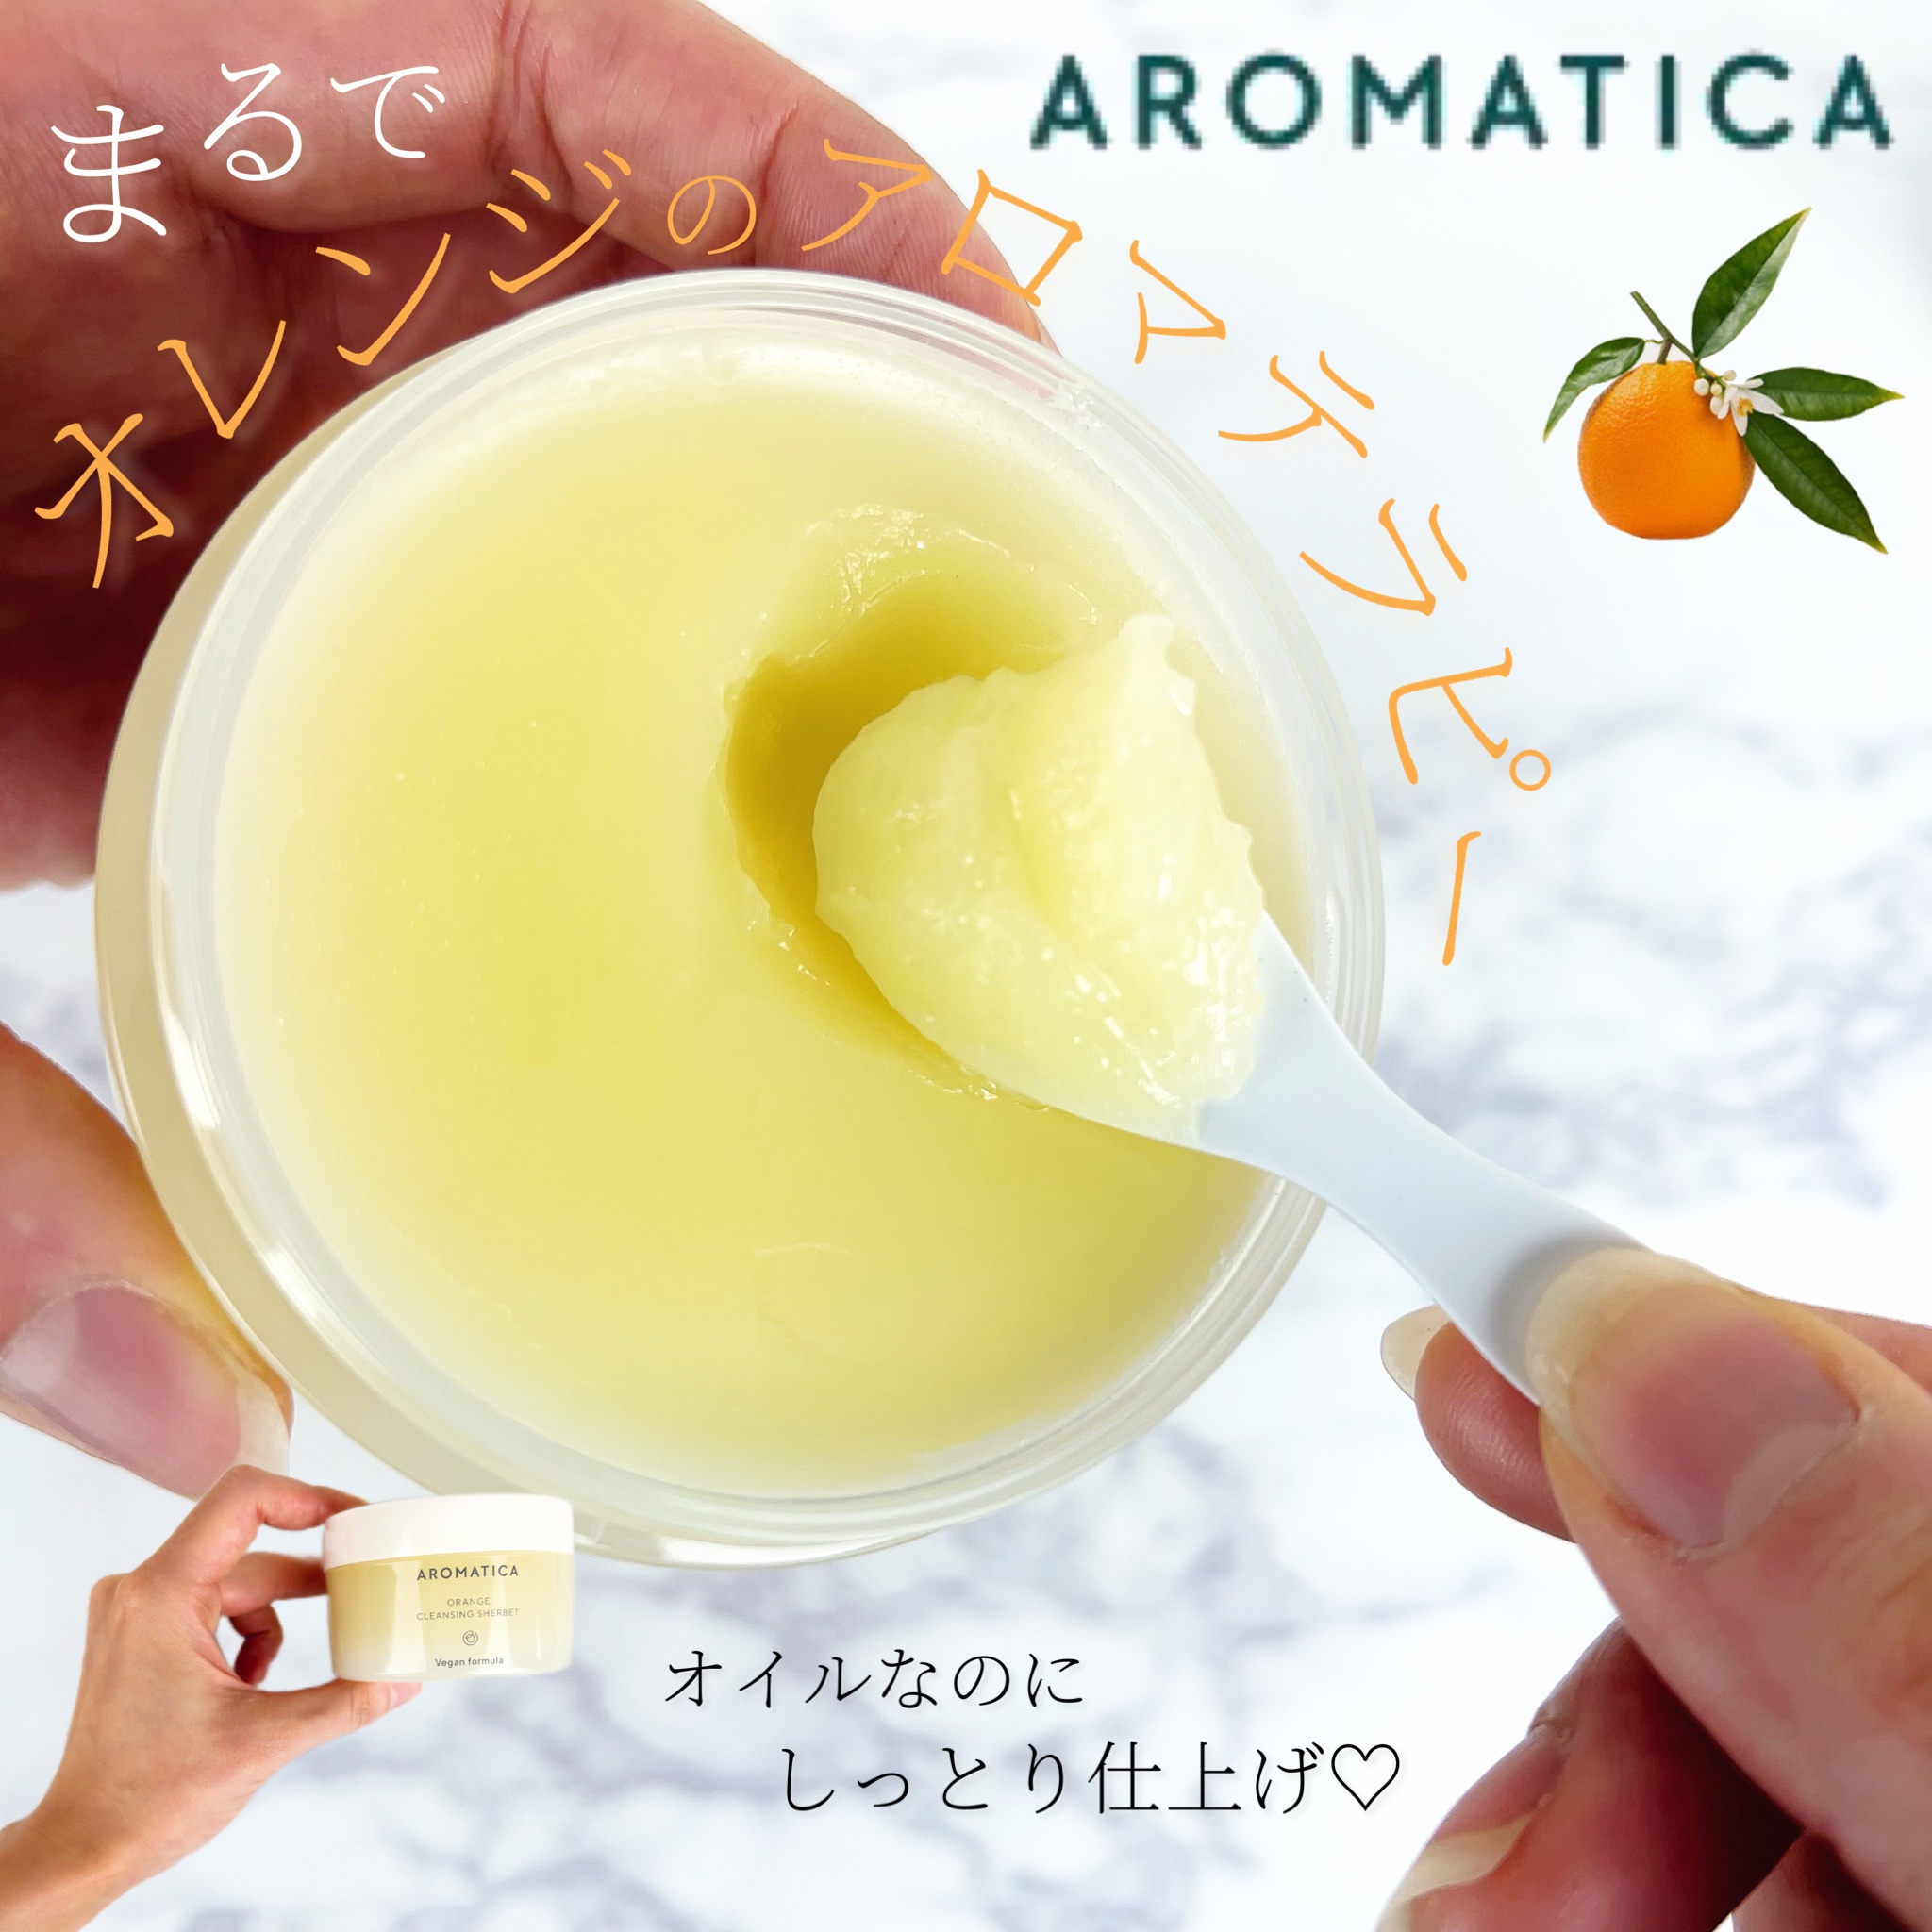 AROMATICA(アロマティカ) オレンジクレンジングシャーベットの良い点・メリットに関するほなみ☺︎さんの口コミ画像1